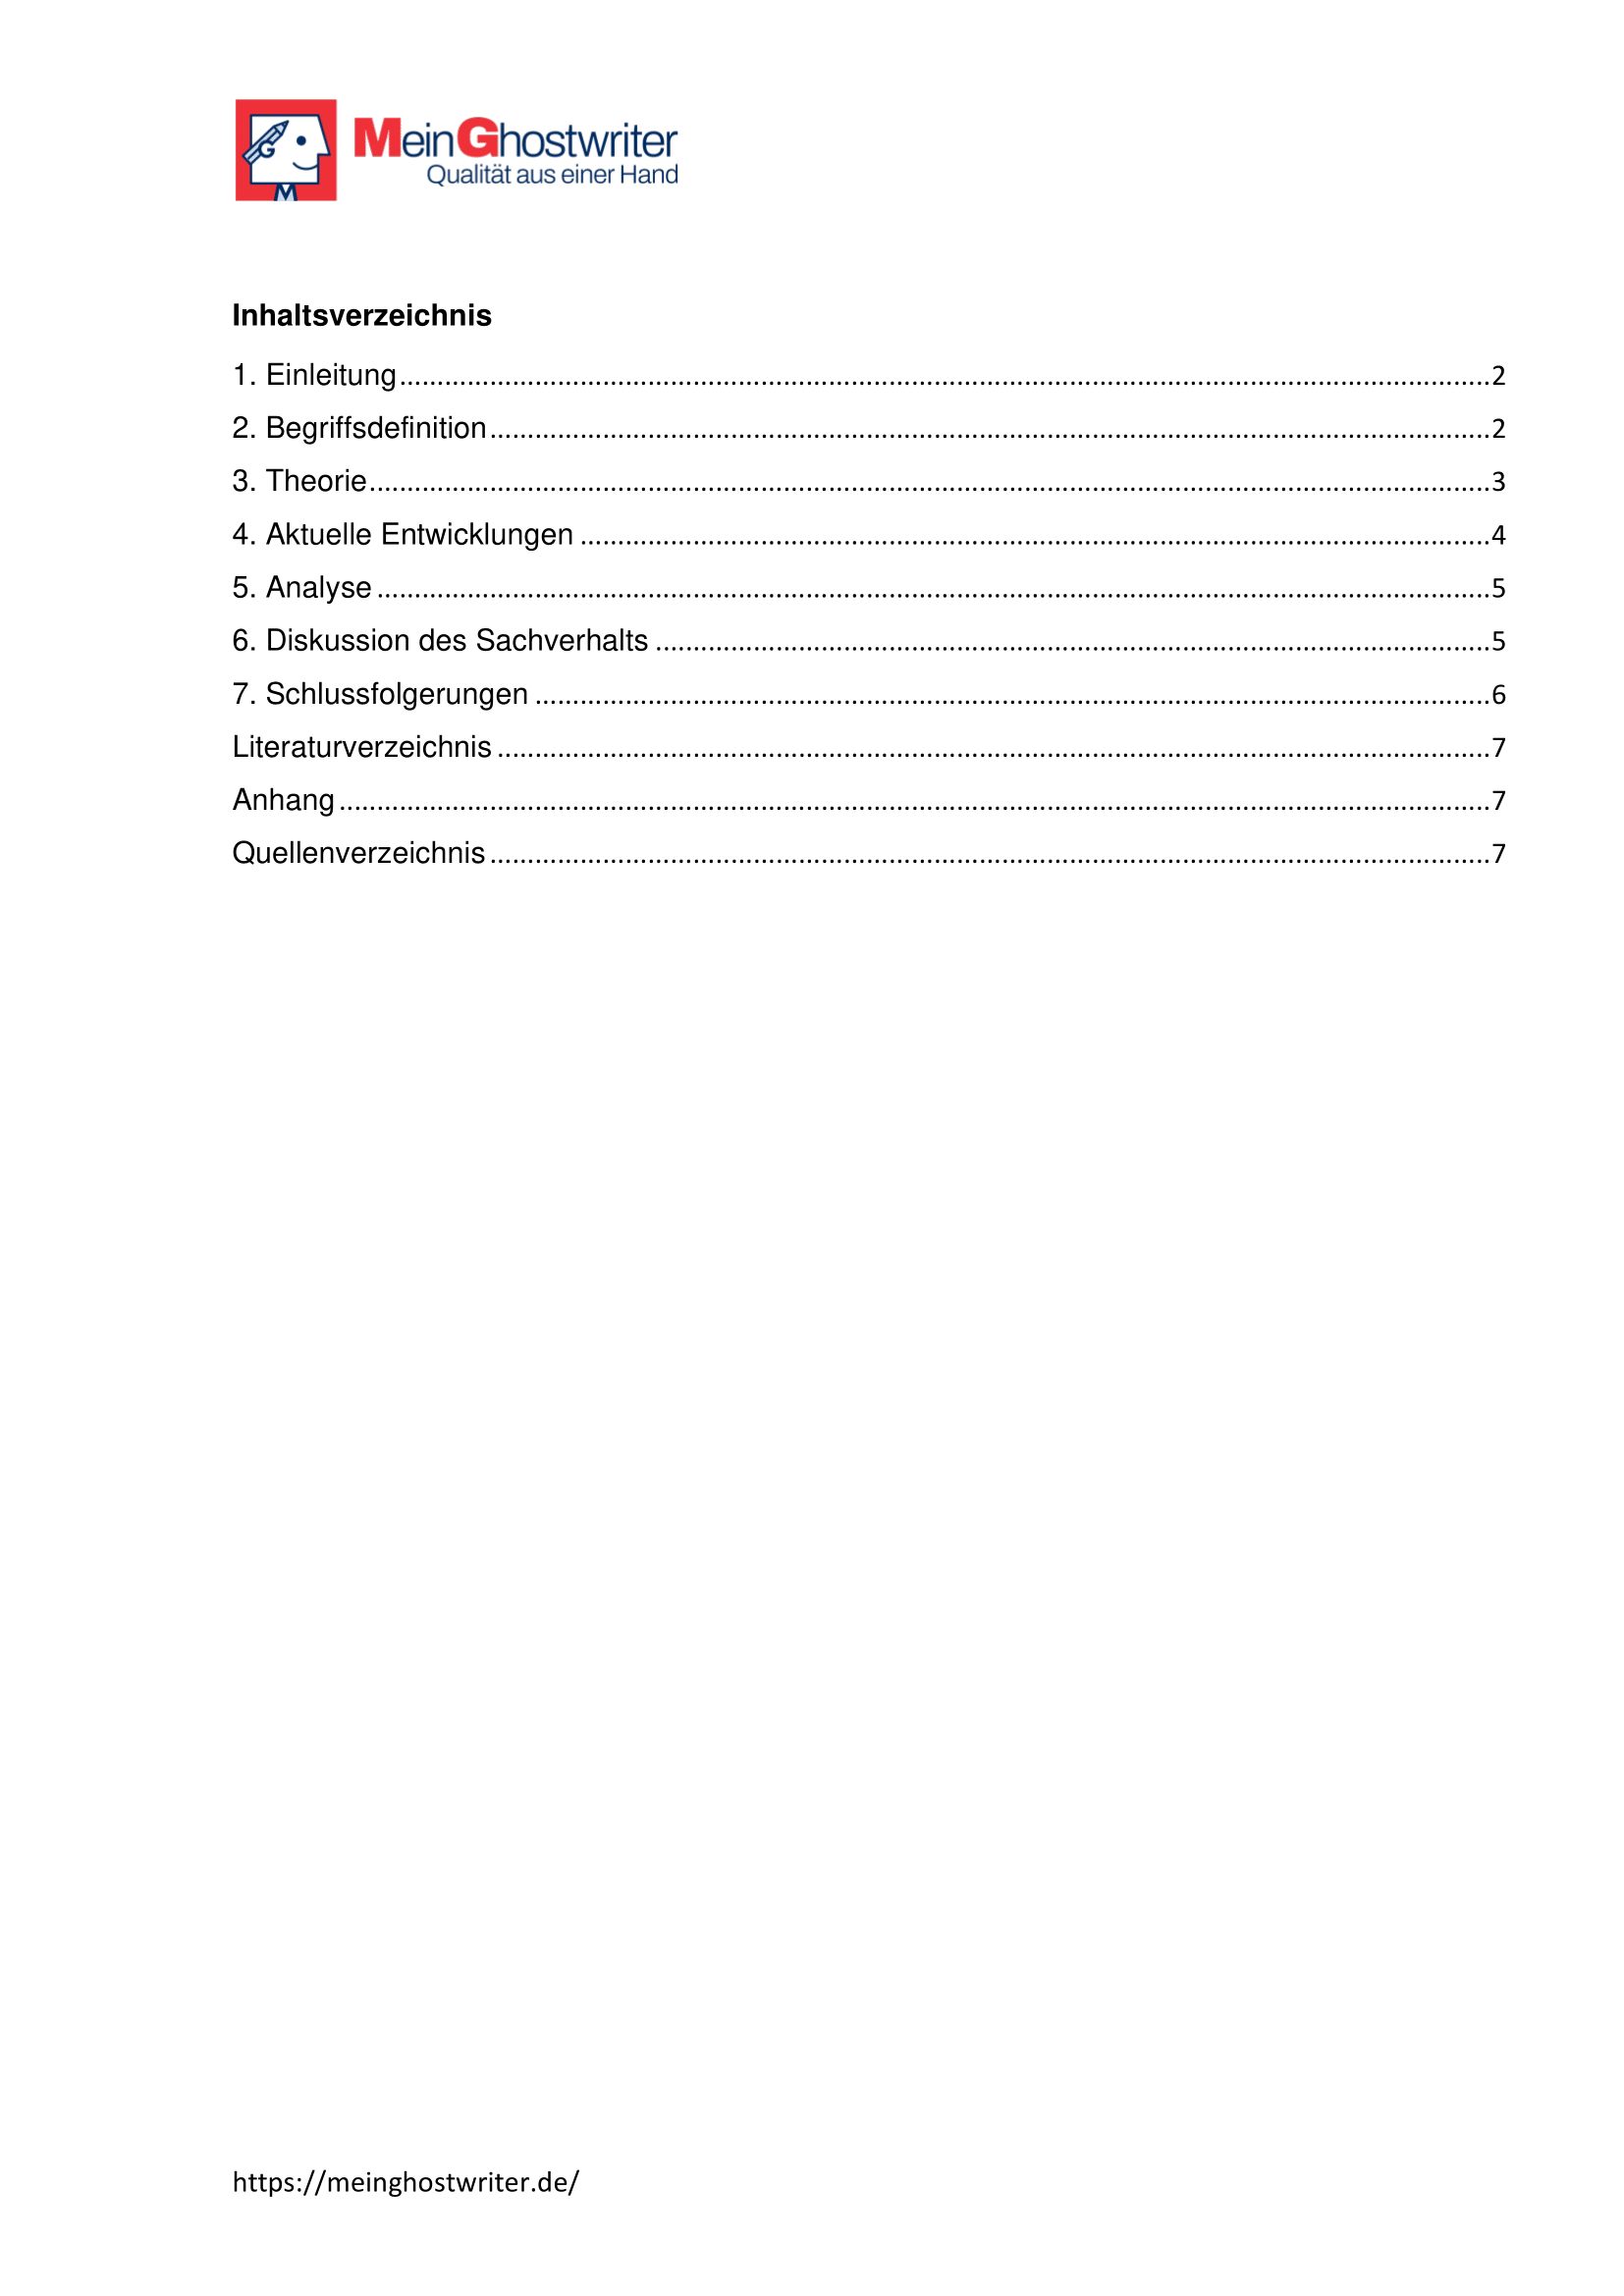 Inhaltsverzeichnis Vorlage 1